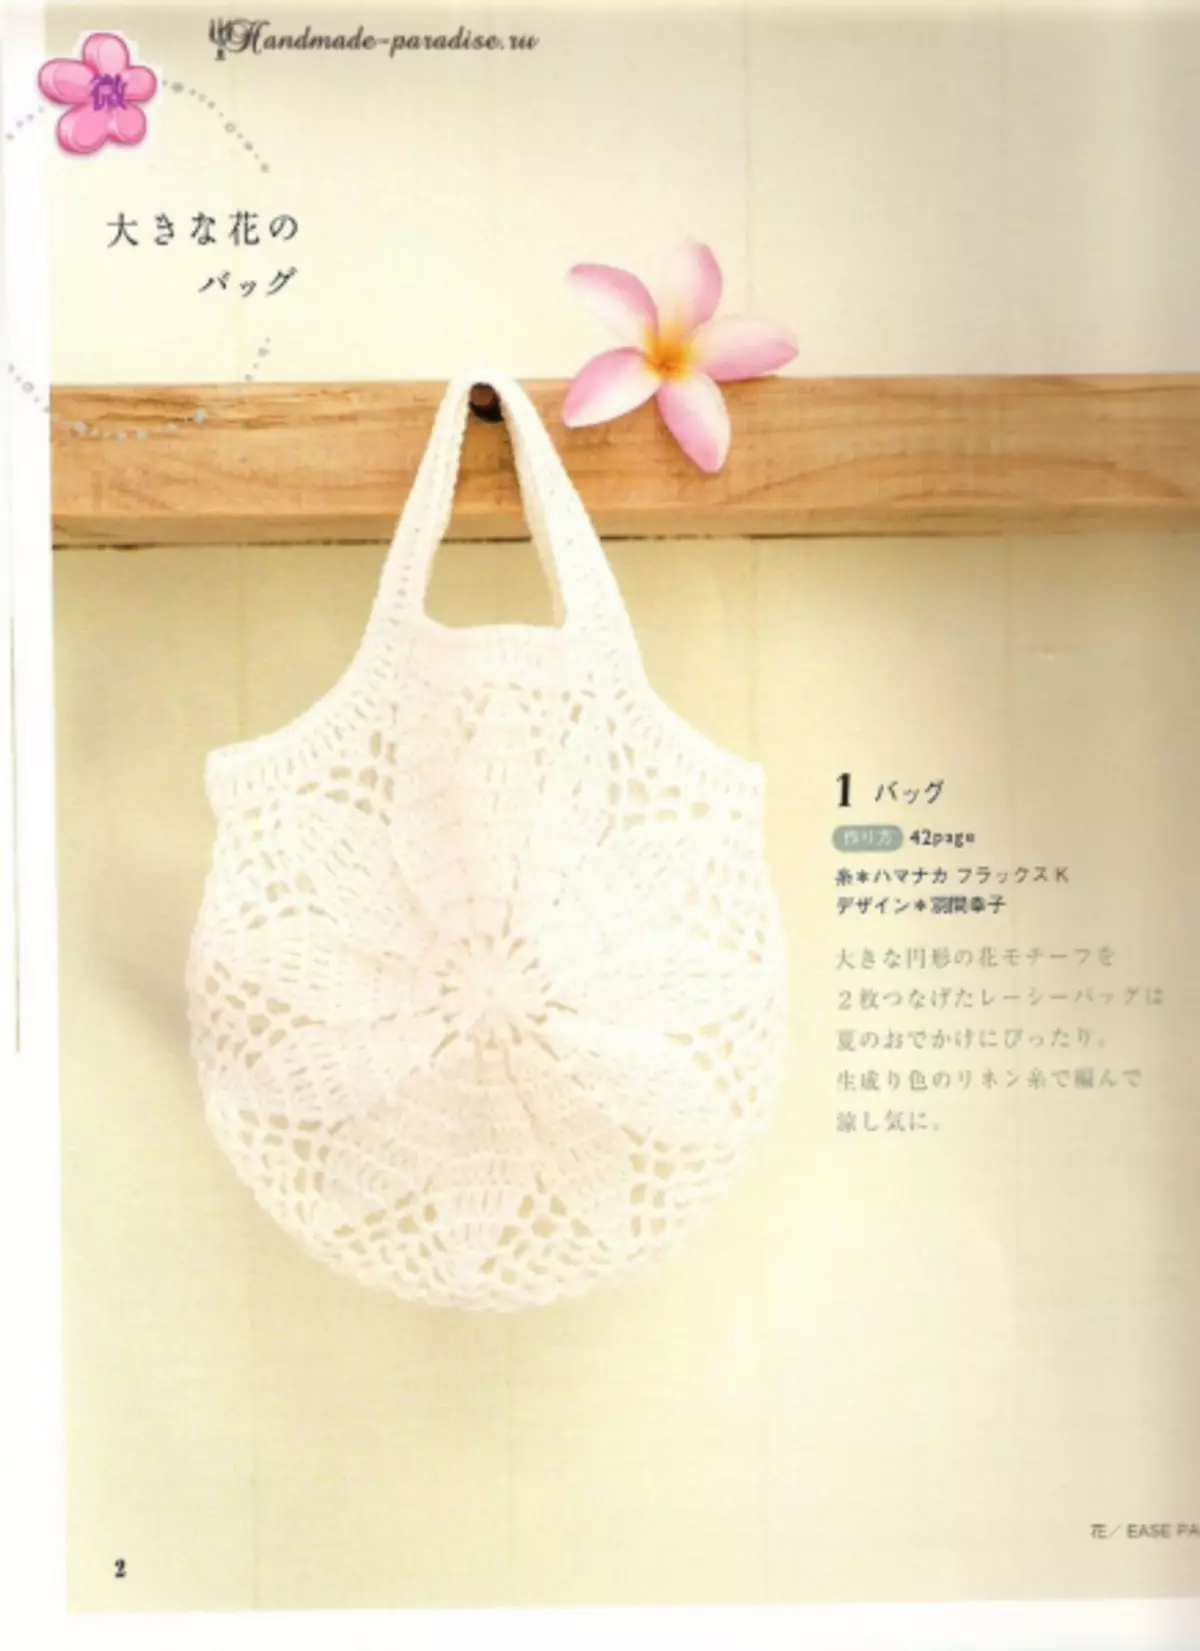 Crochet Acessórios de verão. Revista japonesa com esquemas